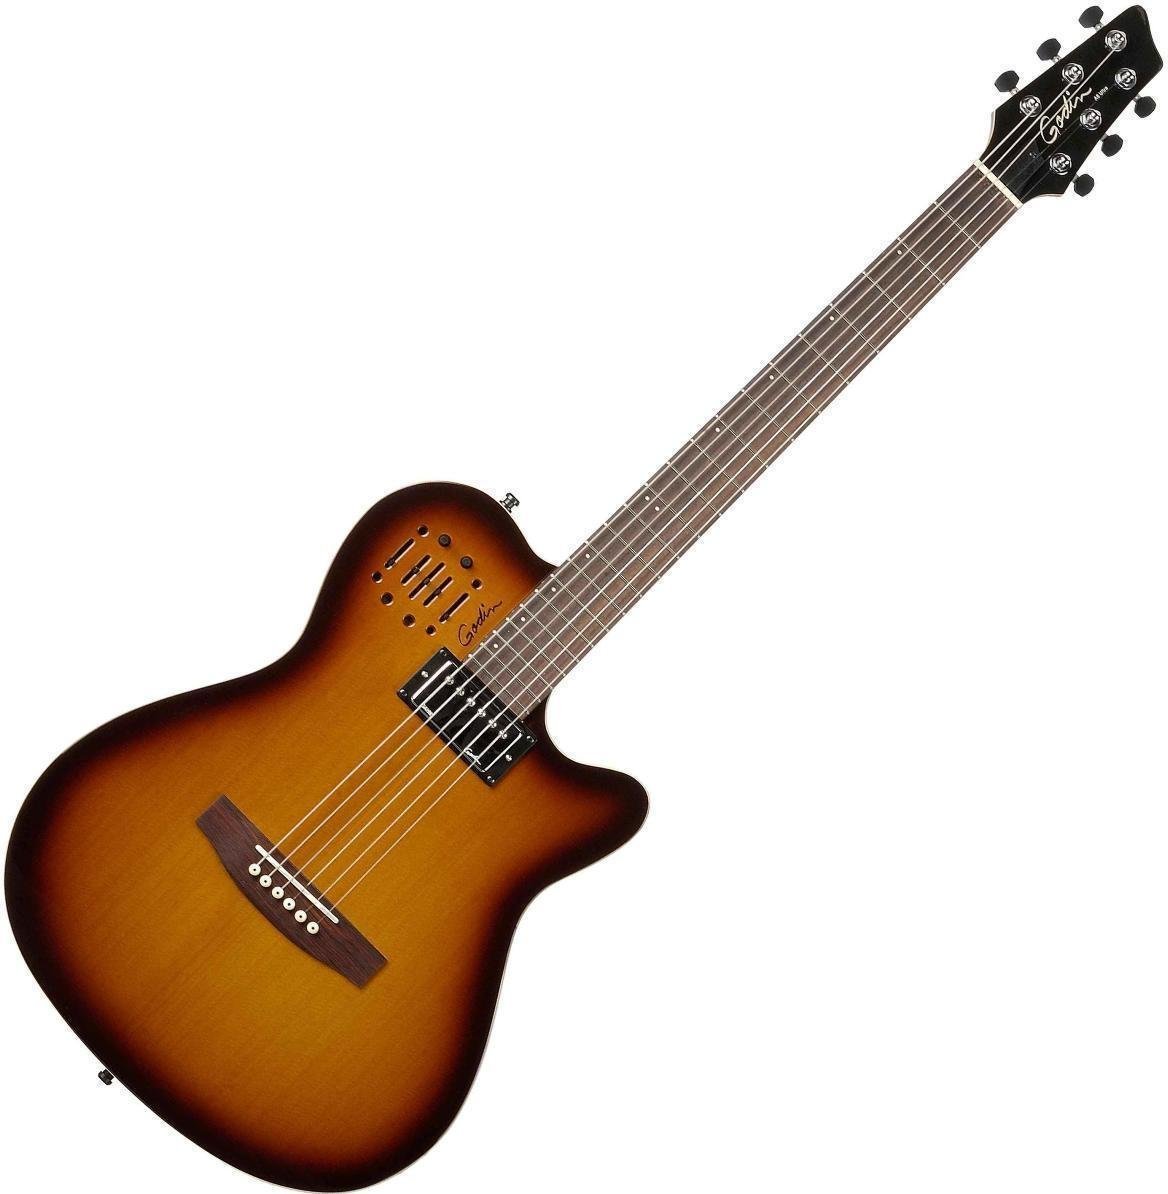 Ηλεκτροακουστική Κιθάρα Godin A 6 Ultra Cognac Burst